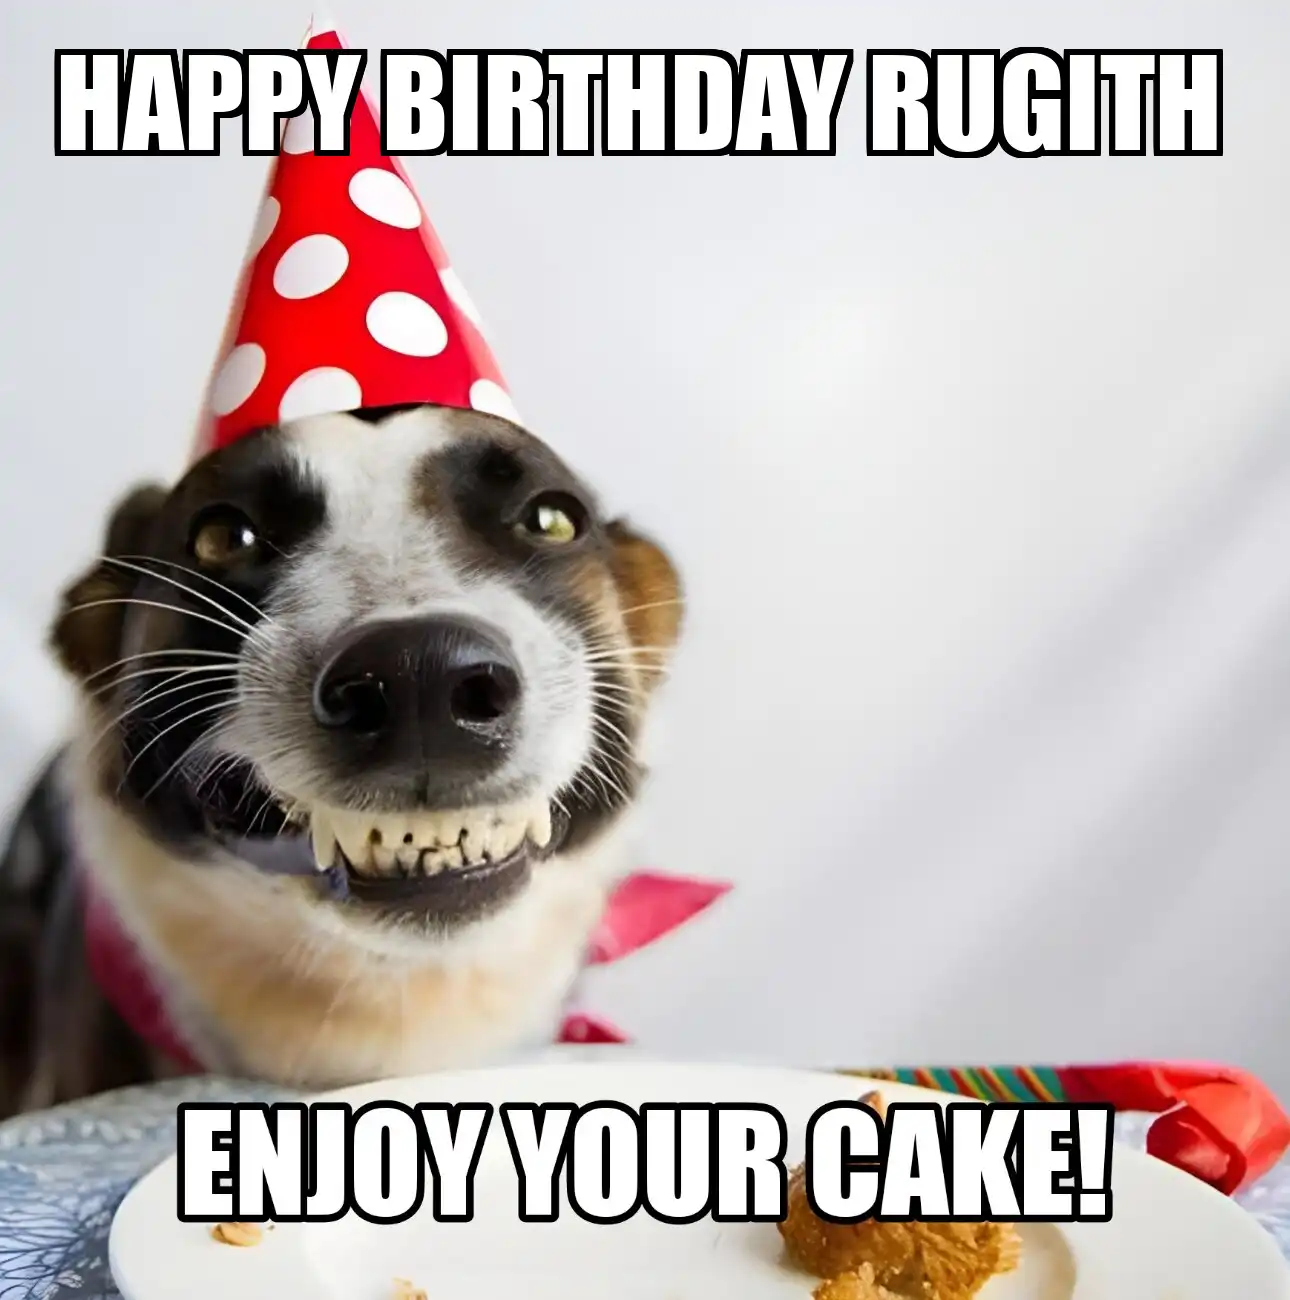 Happy Birthday Rugith Enjoy Your Cake Dog Meme